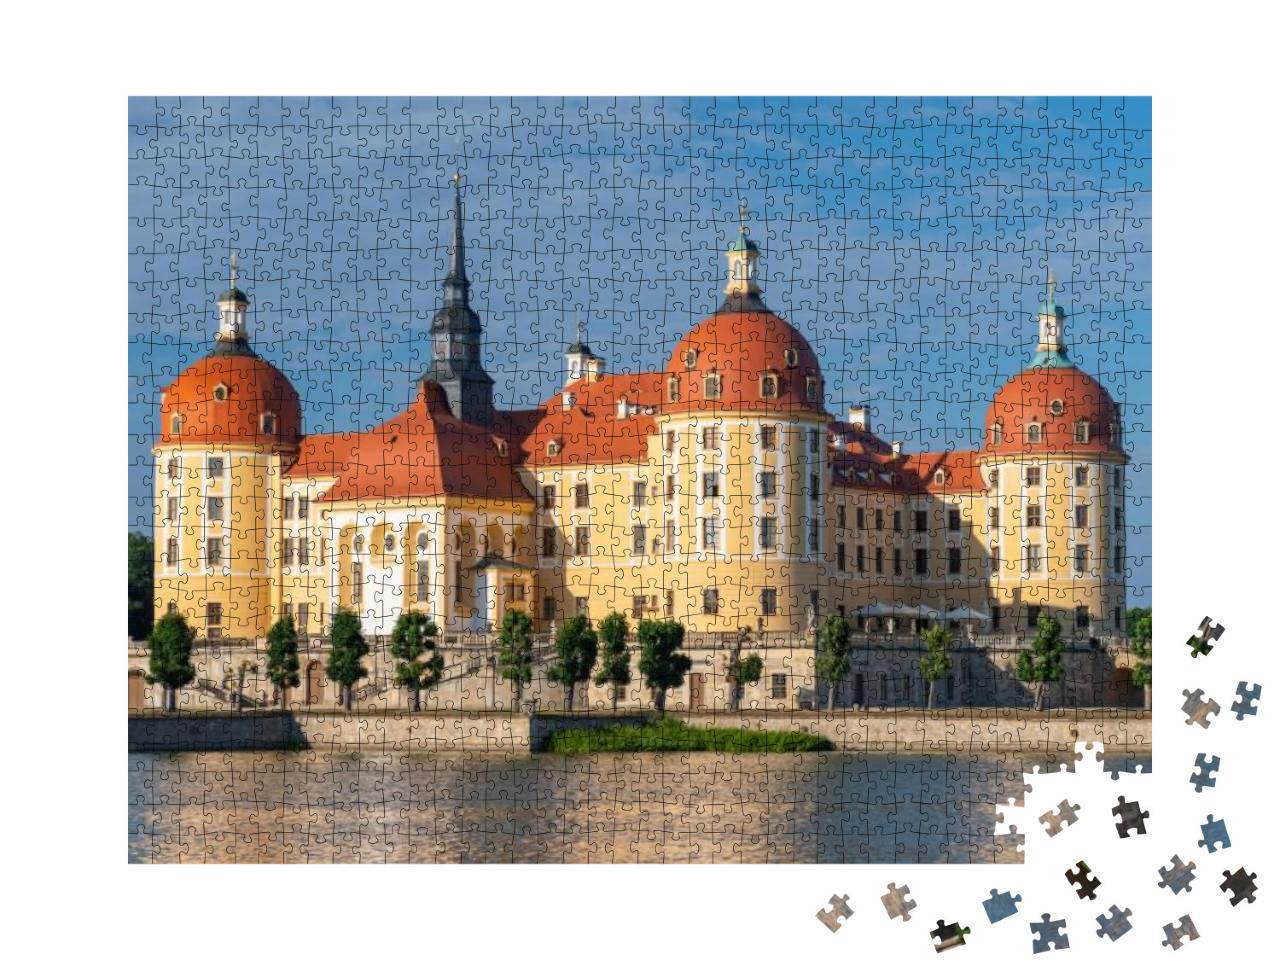 Schloss Moritzburg, a Baroque Castle in Moritzburg, Near... Jigsaw Puzzle with 1000 pieces